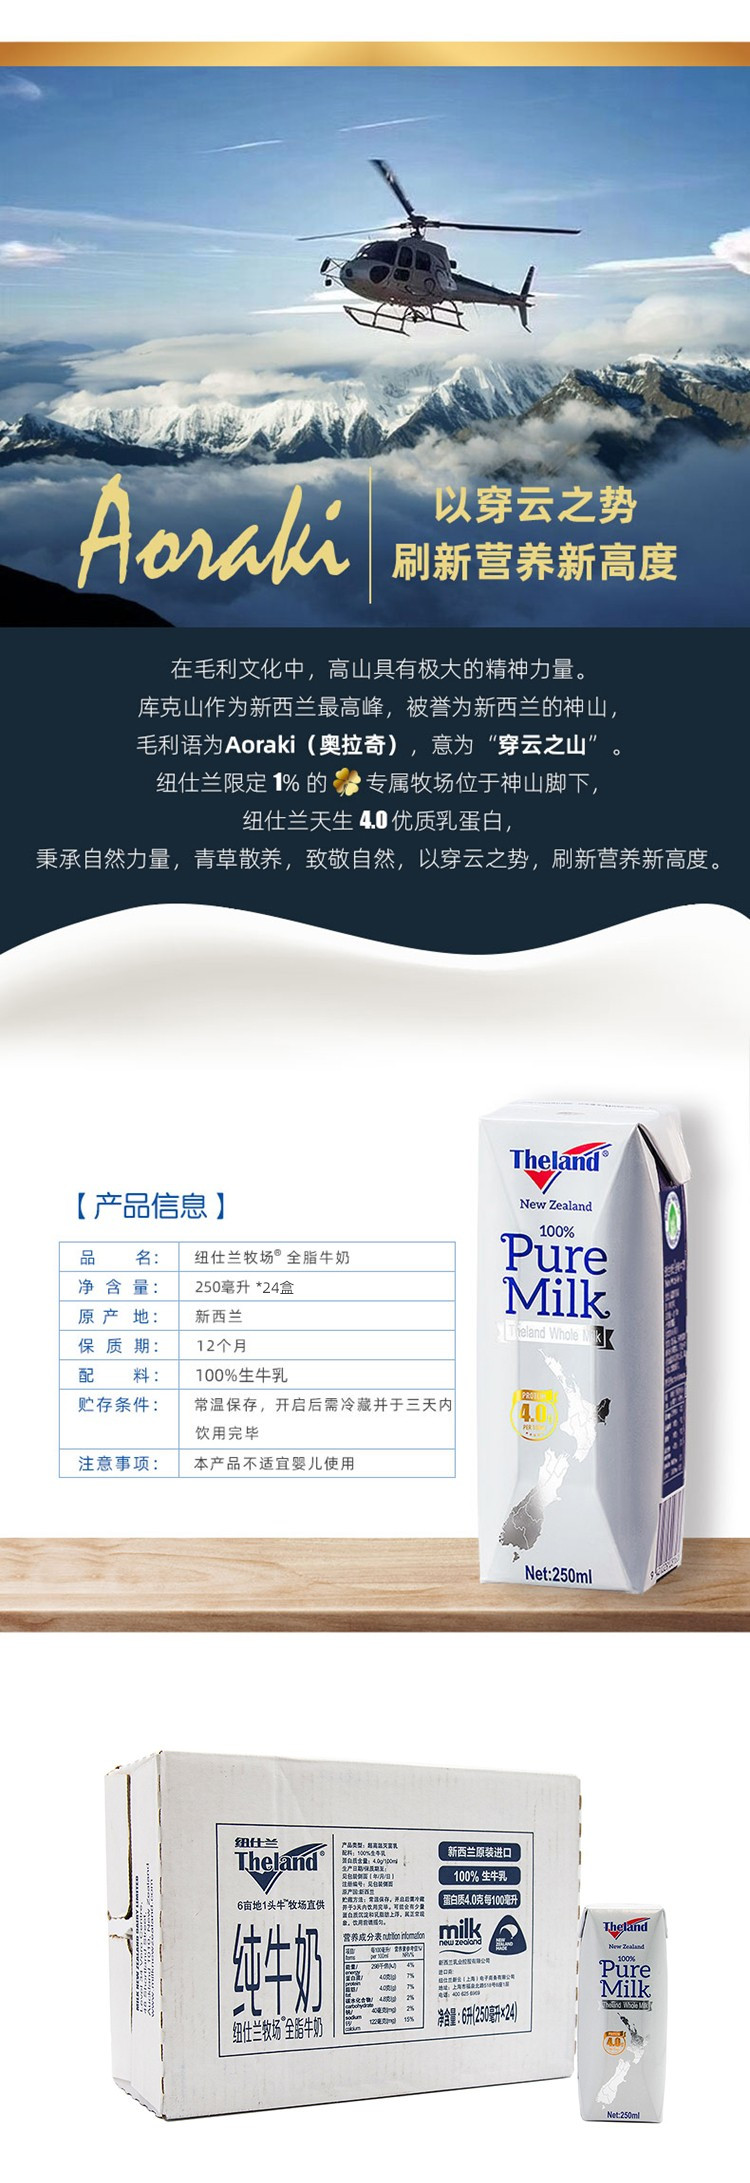 纽仕兰 4.0g新西兰进口全脂纯牛奶250ml*24盒/箱